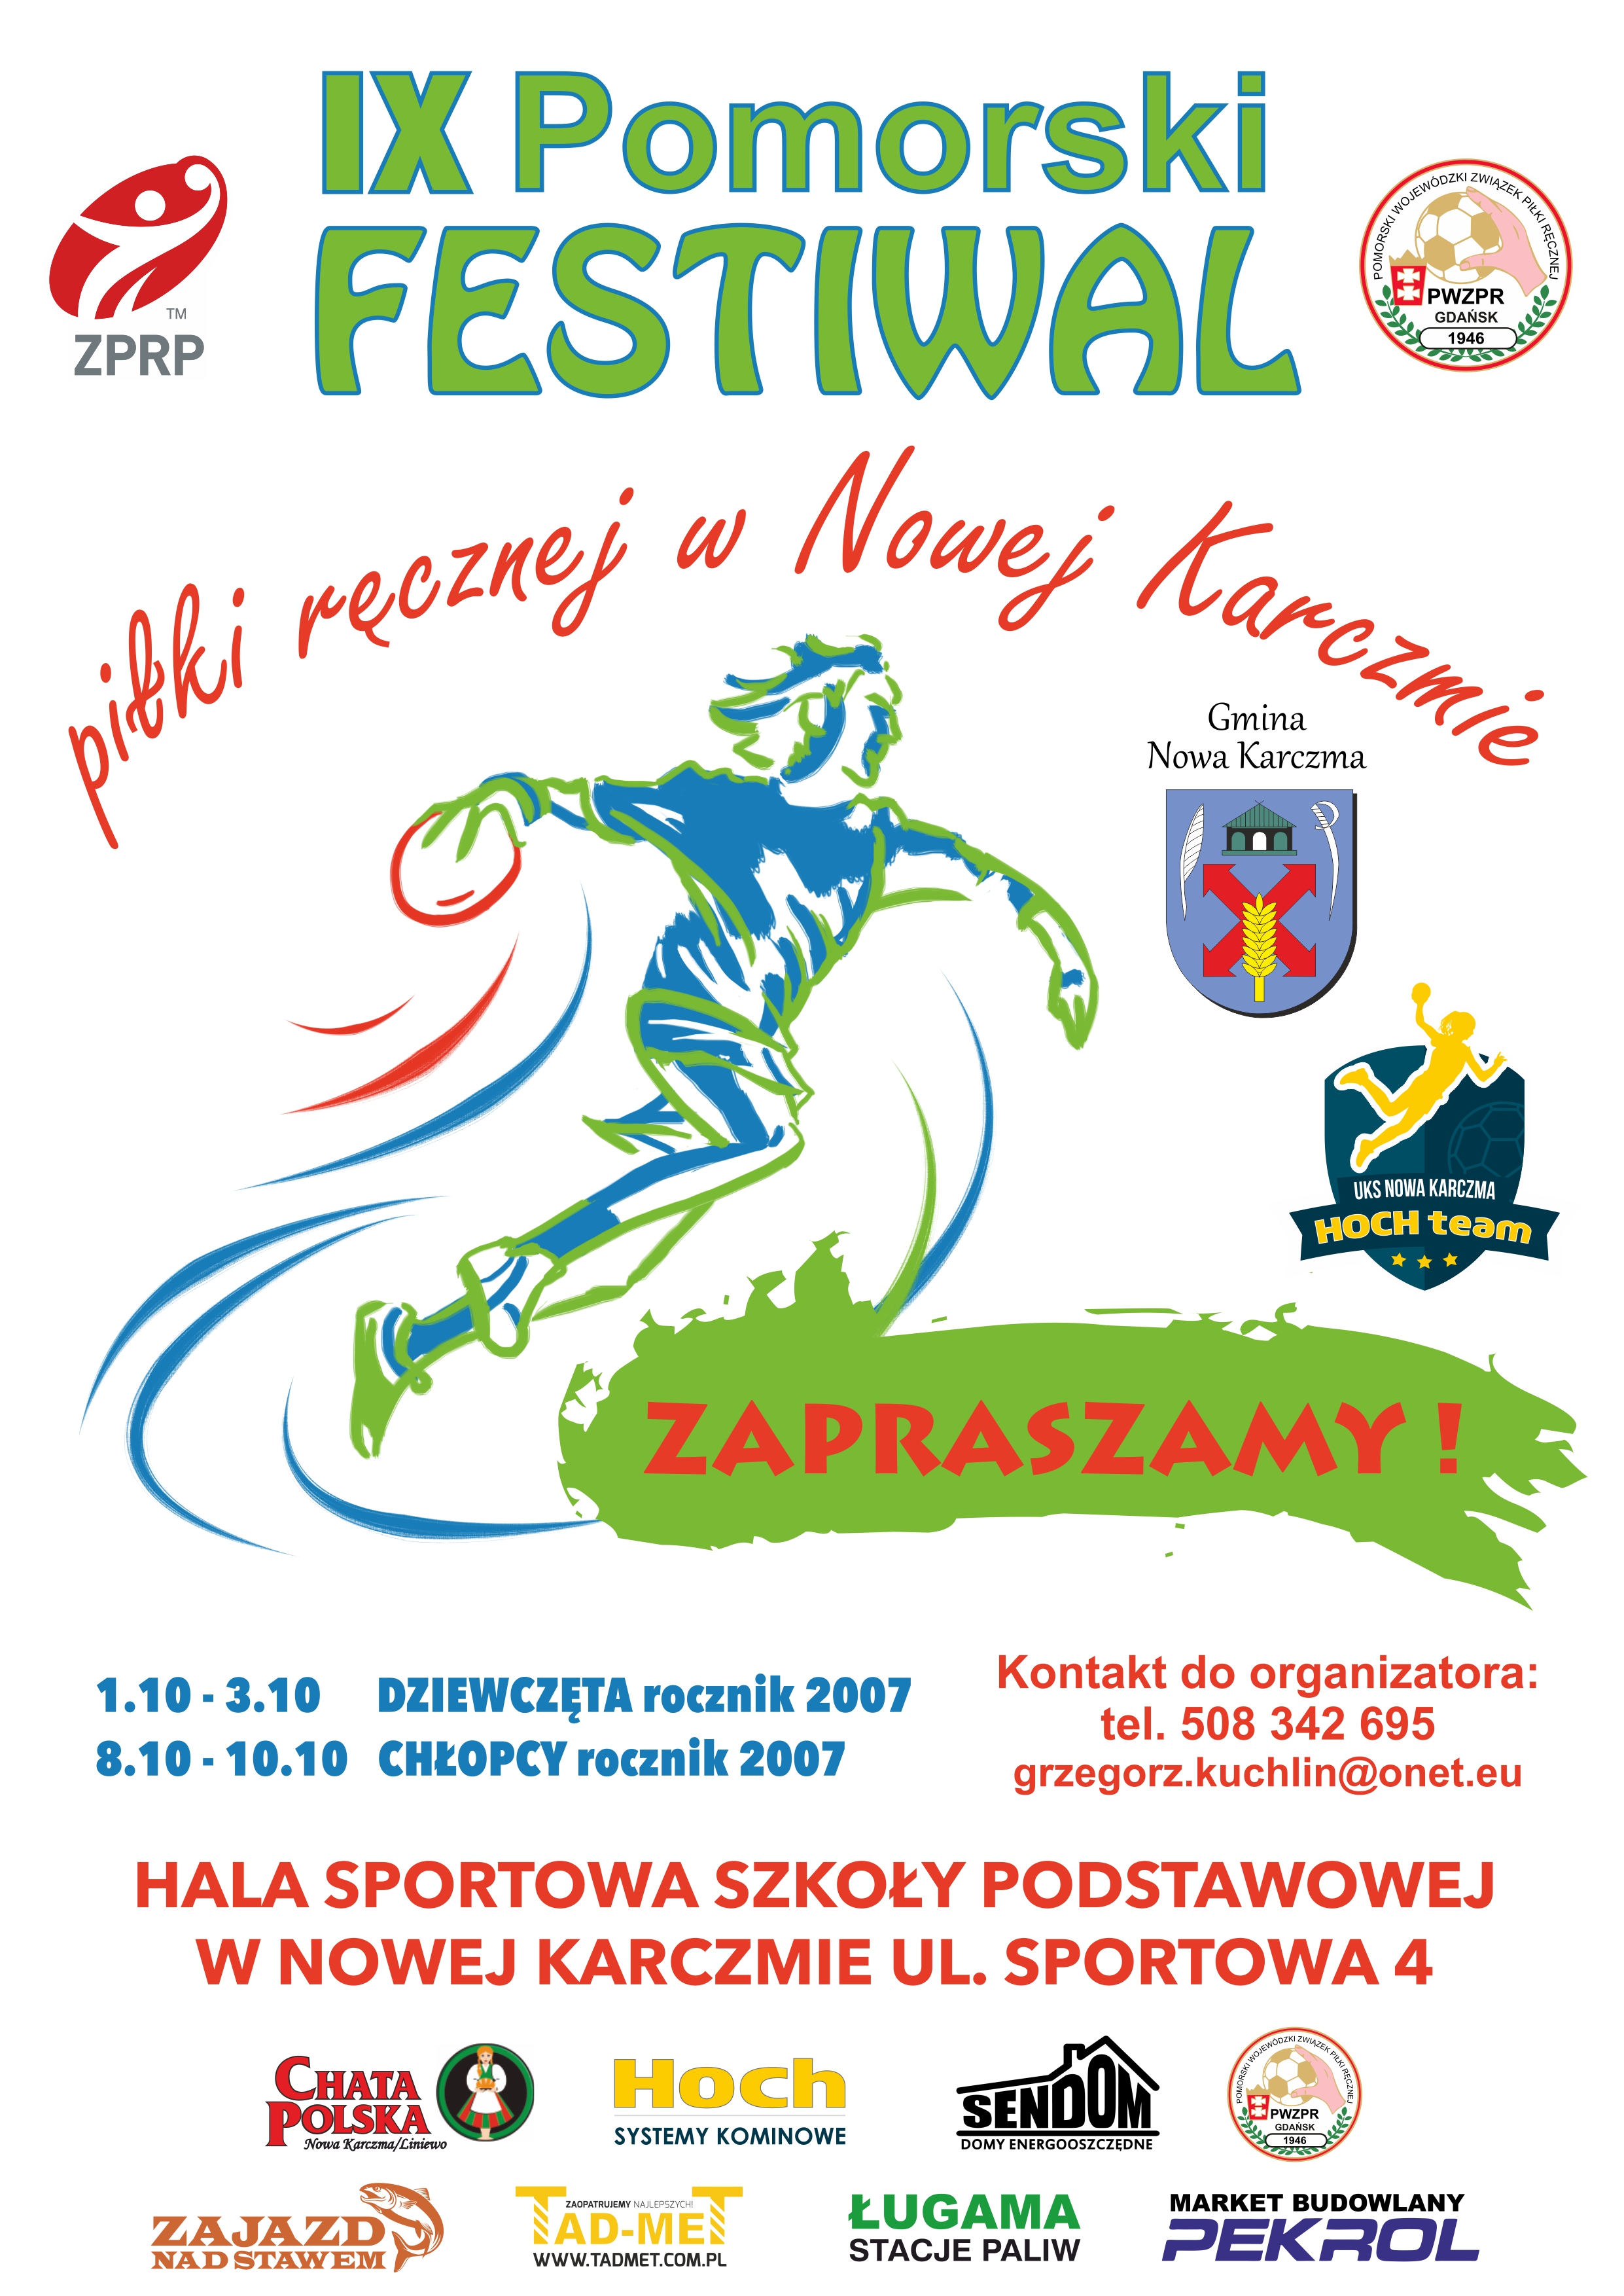 IX Pomorski Festiwal Piłki Ręcznej w Nowej Karczmie